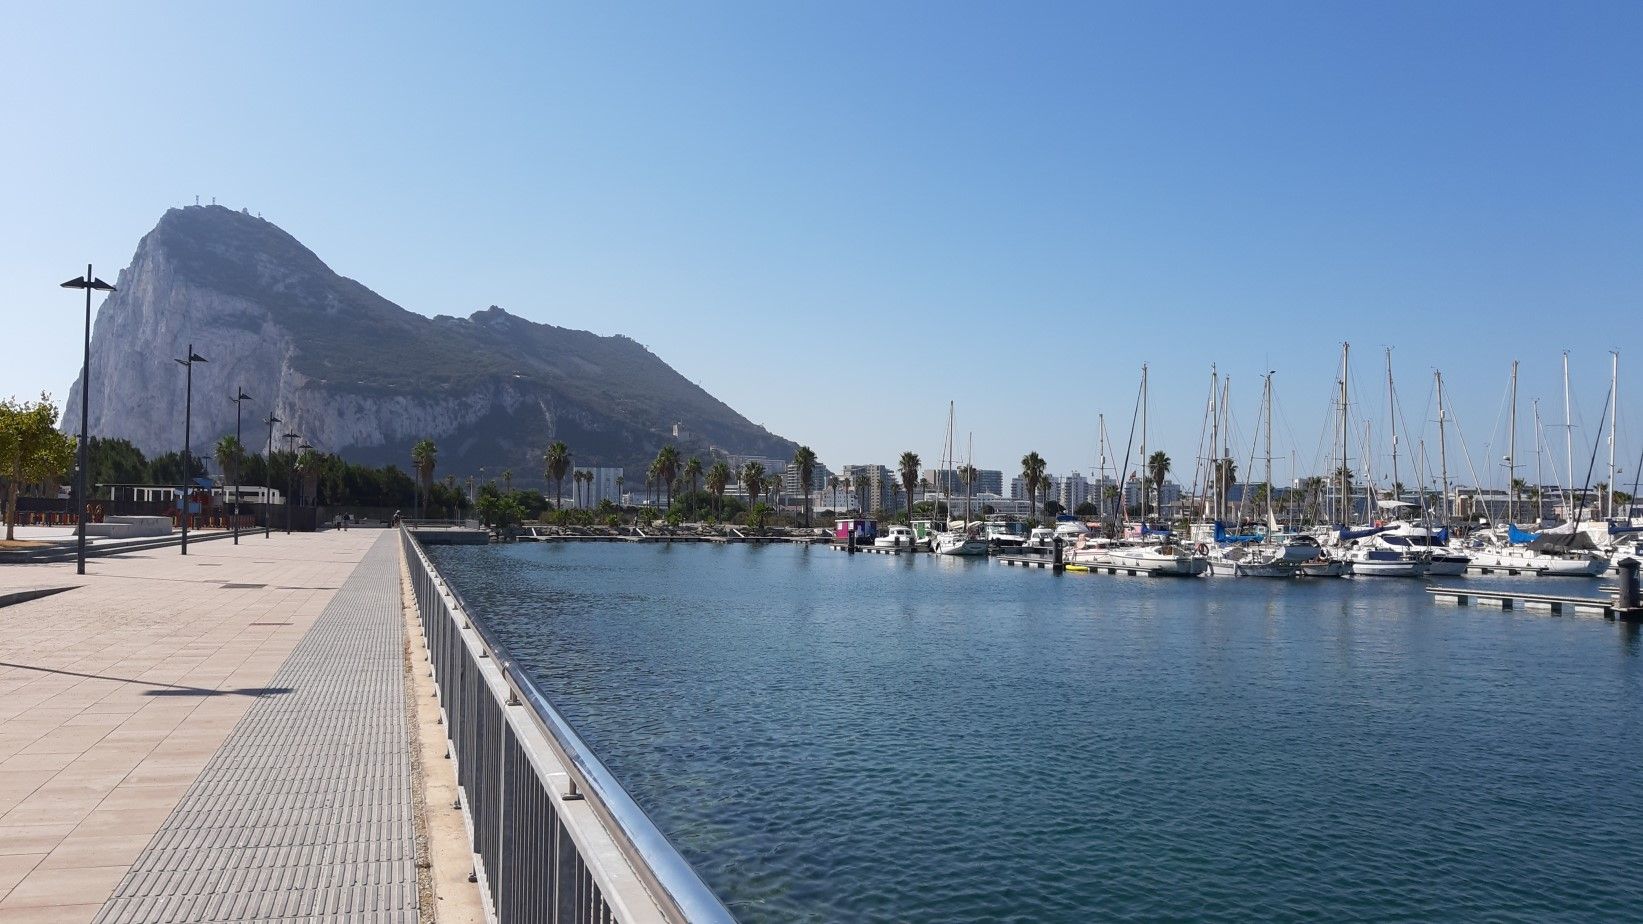 Turismo proyecta iniciar excursiones en barco desde Alcaidesa Marina.